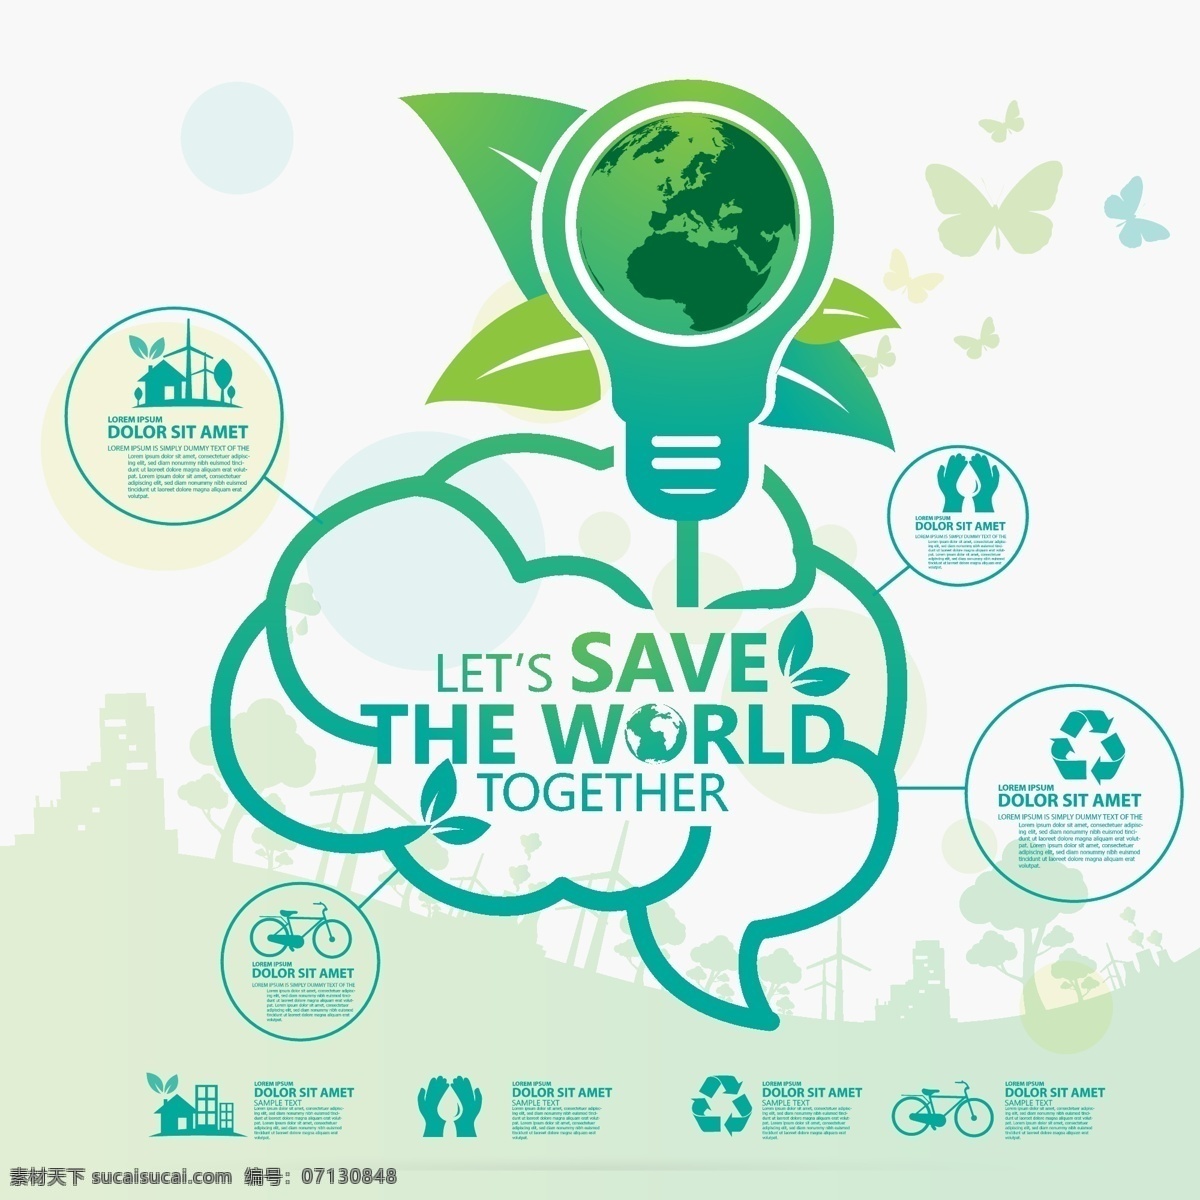 绿色大气 环保 绿色 节能 健康 减排 节能减排 环境 新鲜空气 大气 环境治理 排污 环境保护 地球环境 能源 清洁能源 绿色食品 风能 太阳能 资源 共享 招贴设计